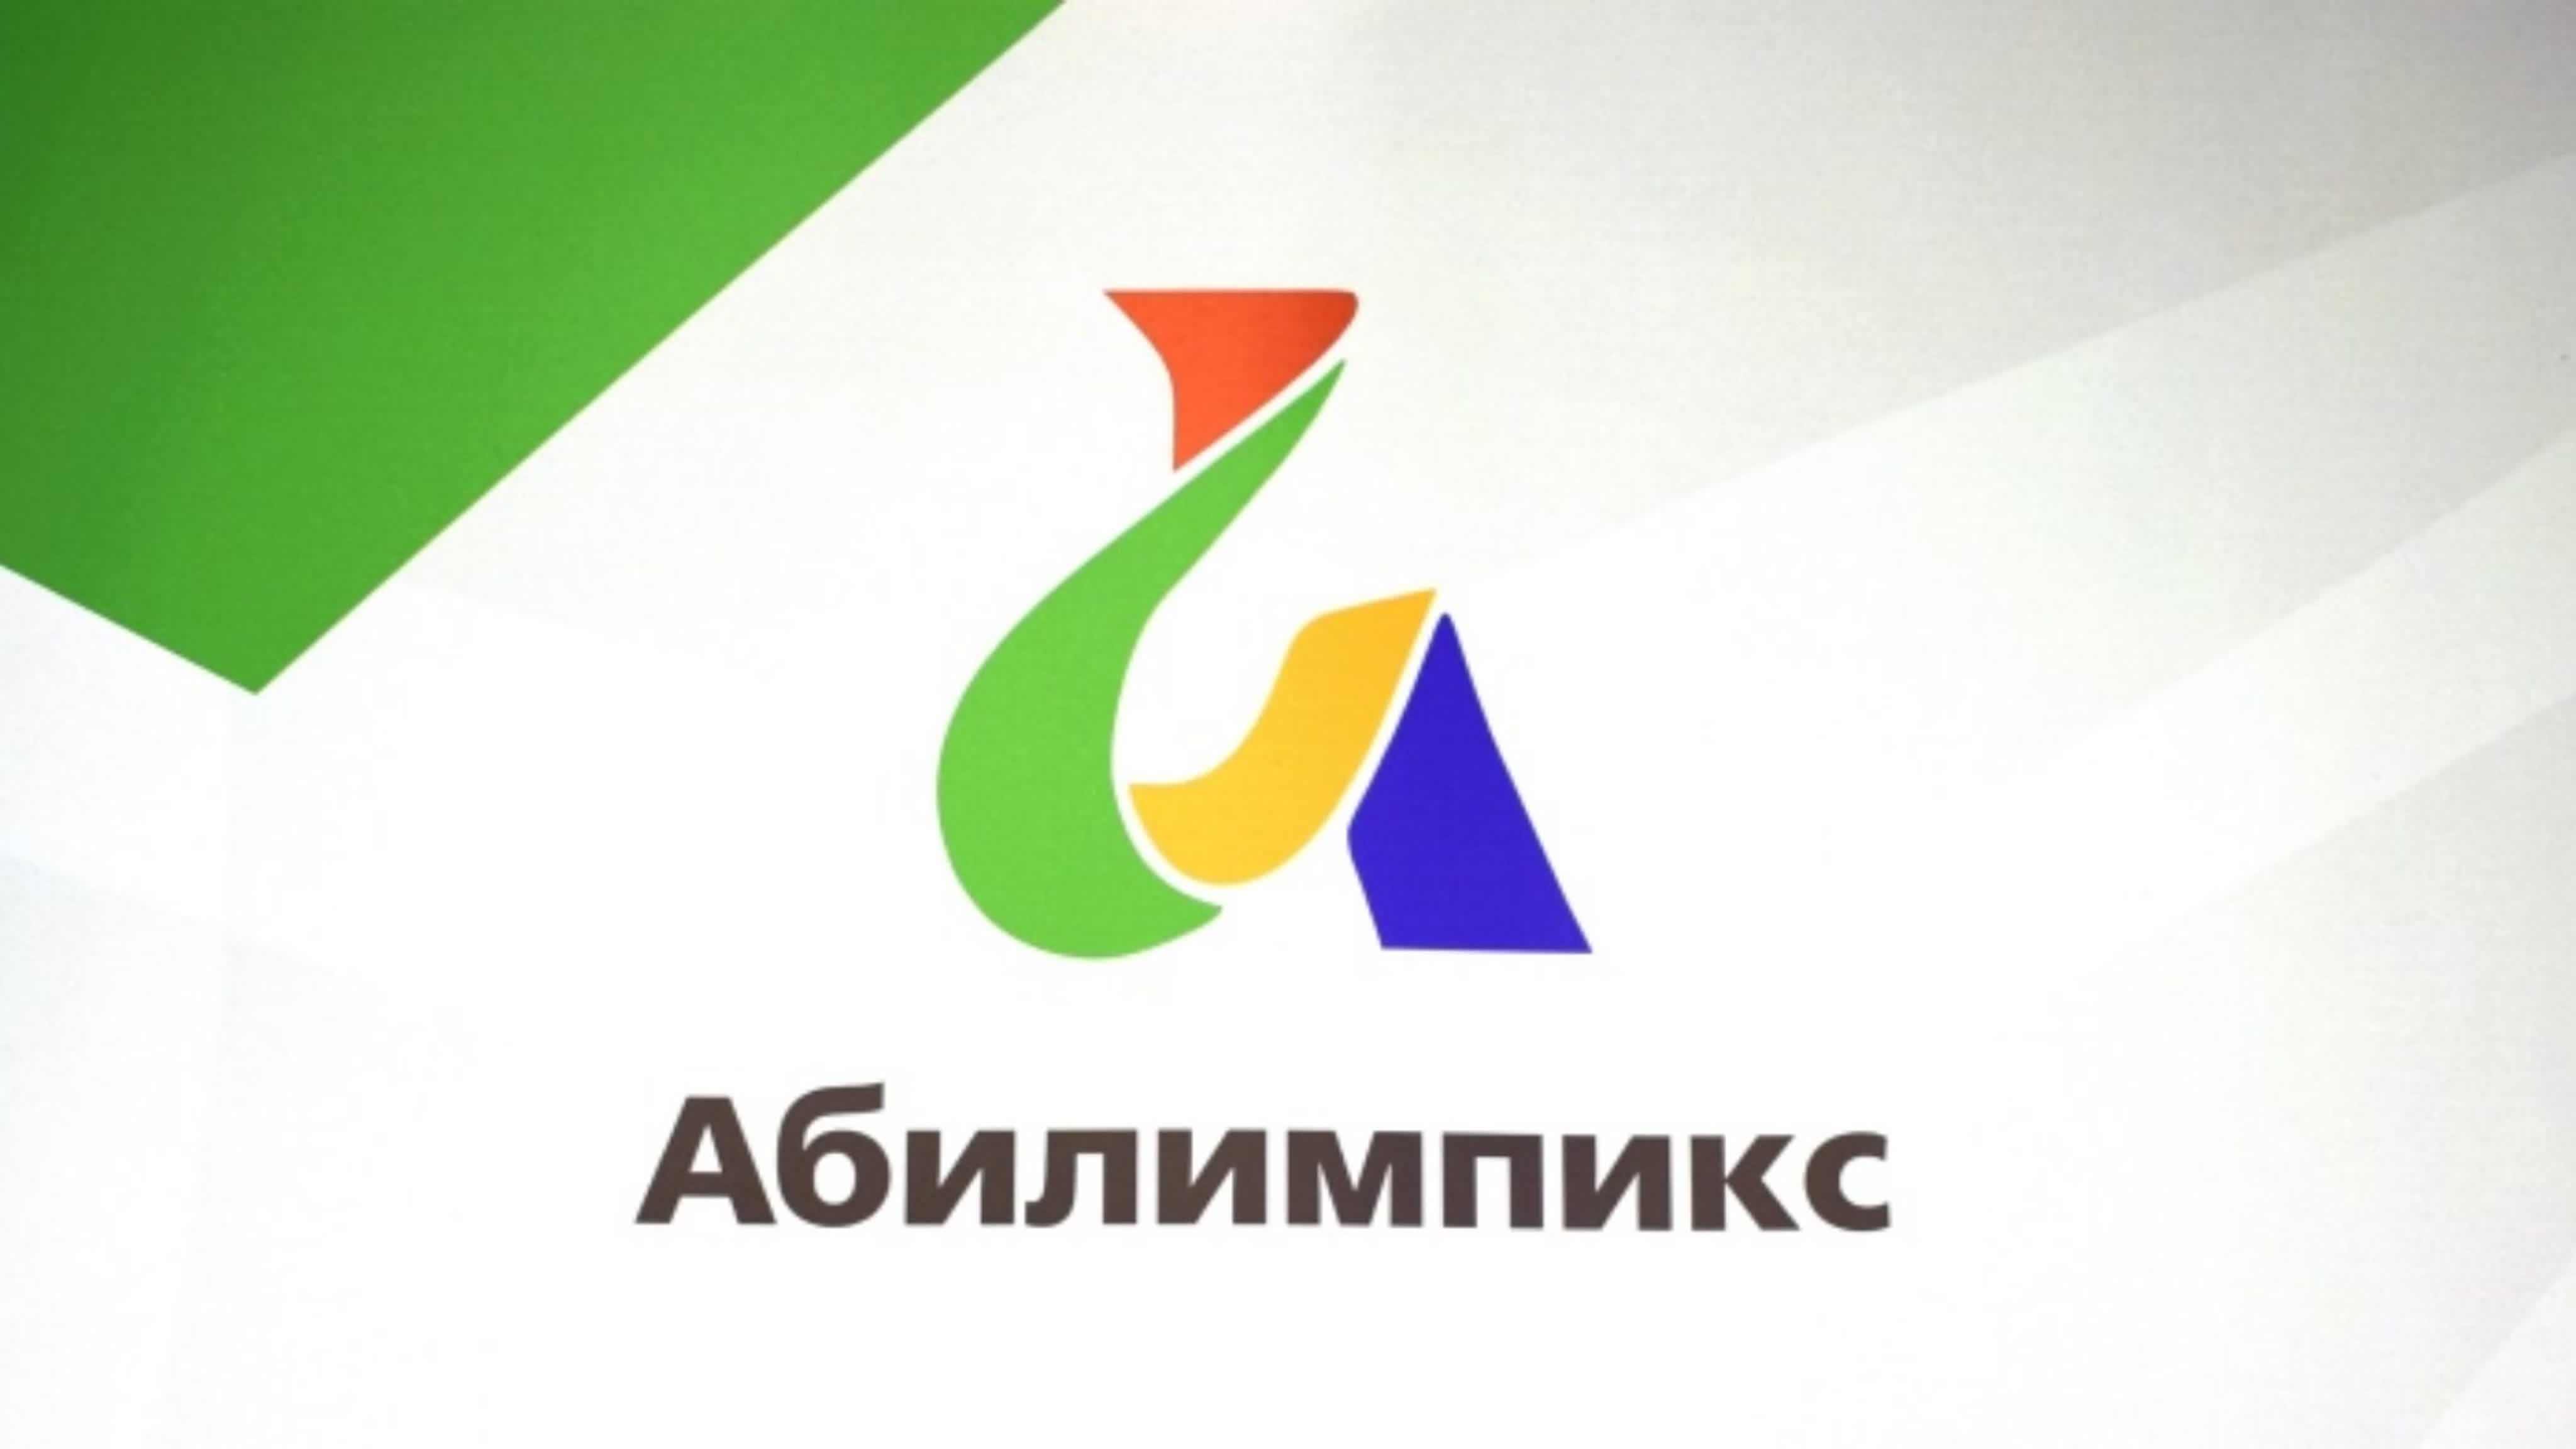 В Мурманской области пройдёт IX региональный чемпионат «Абилимпикс»